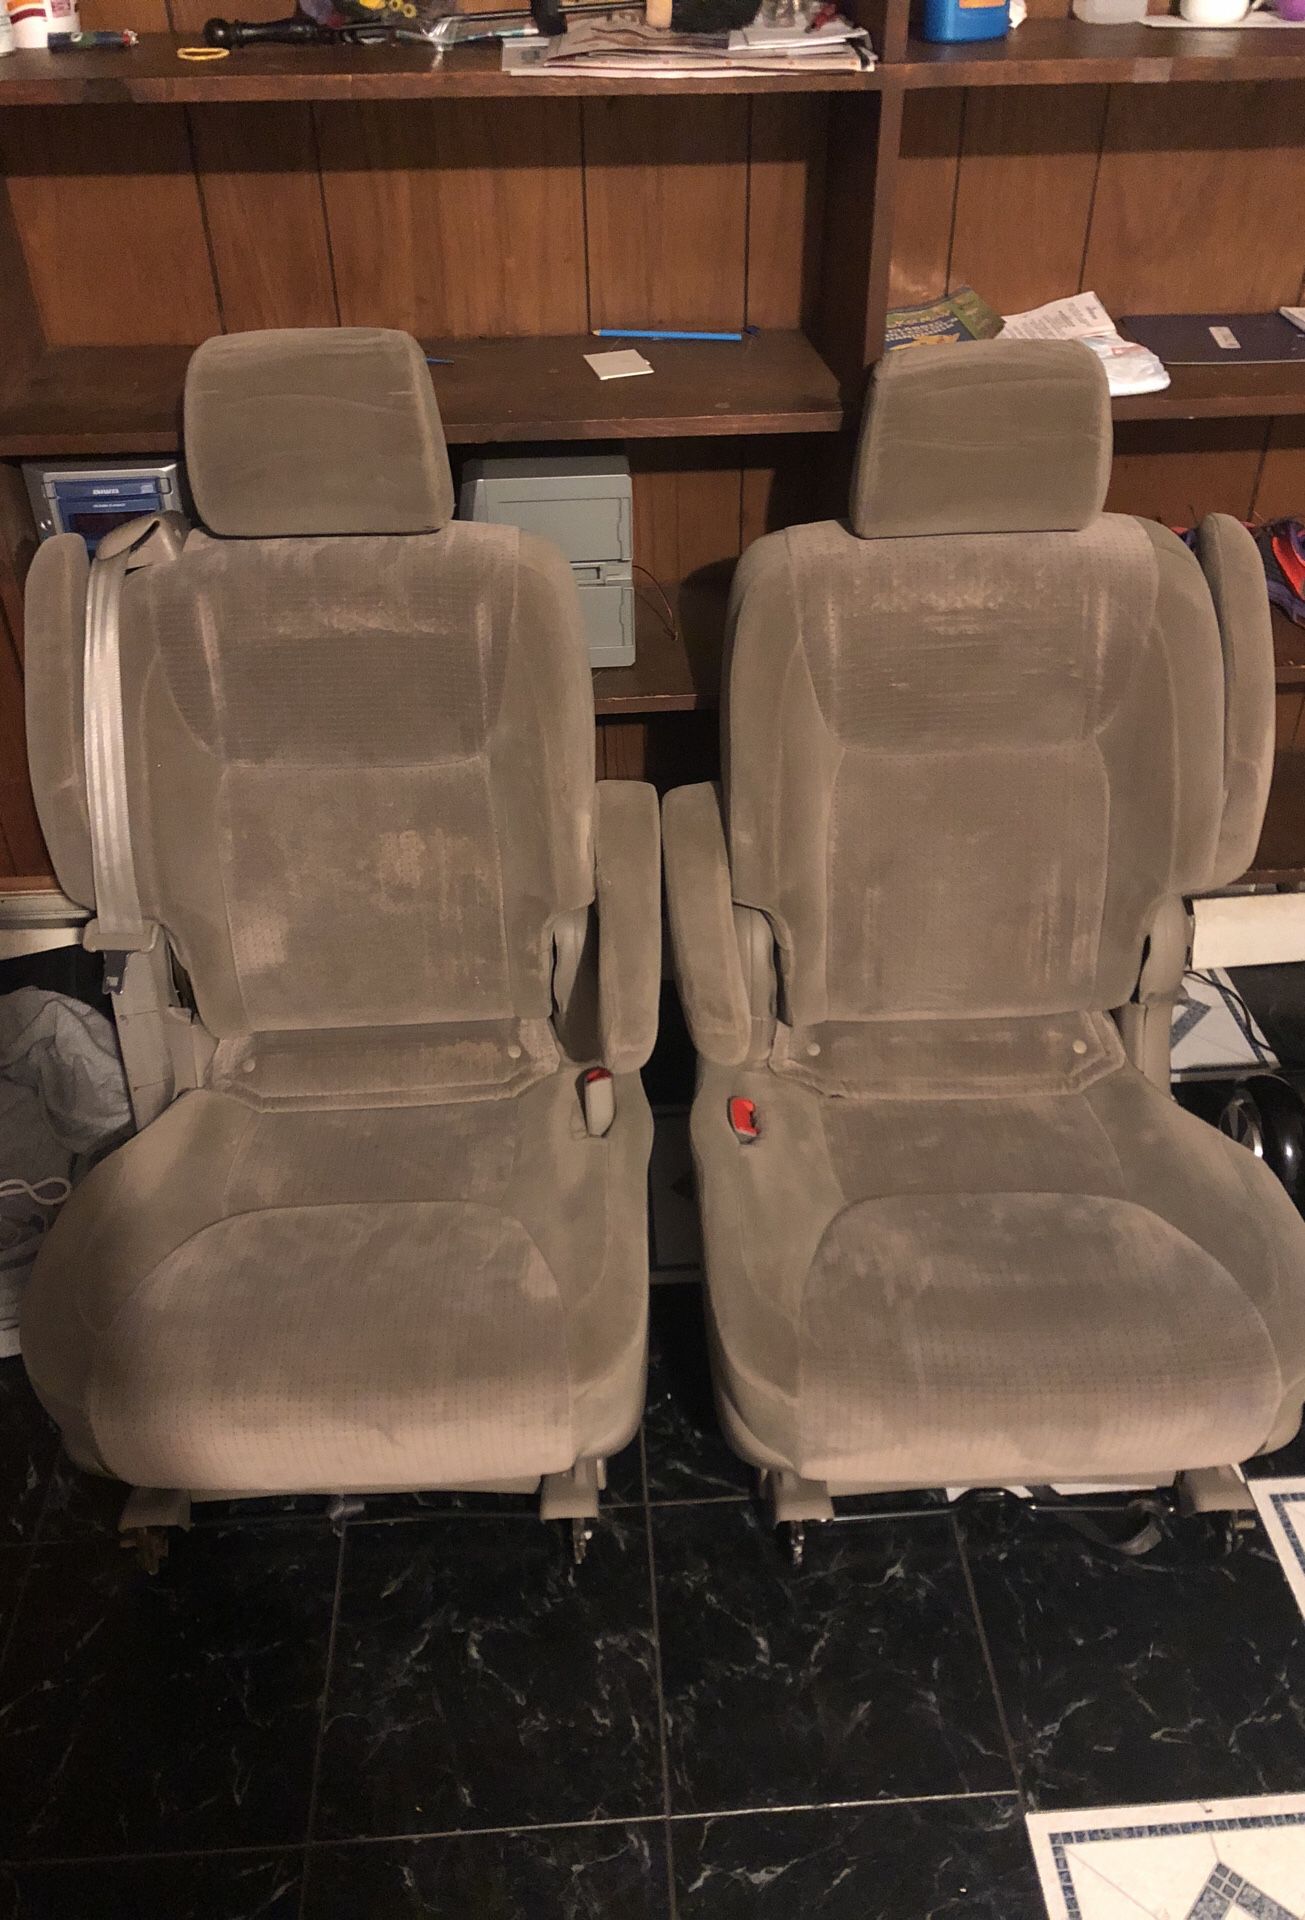 Toyota Sienna seats